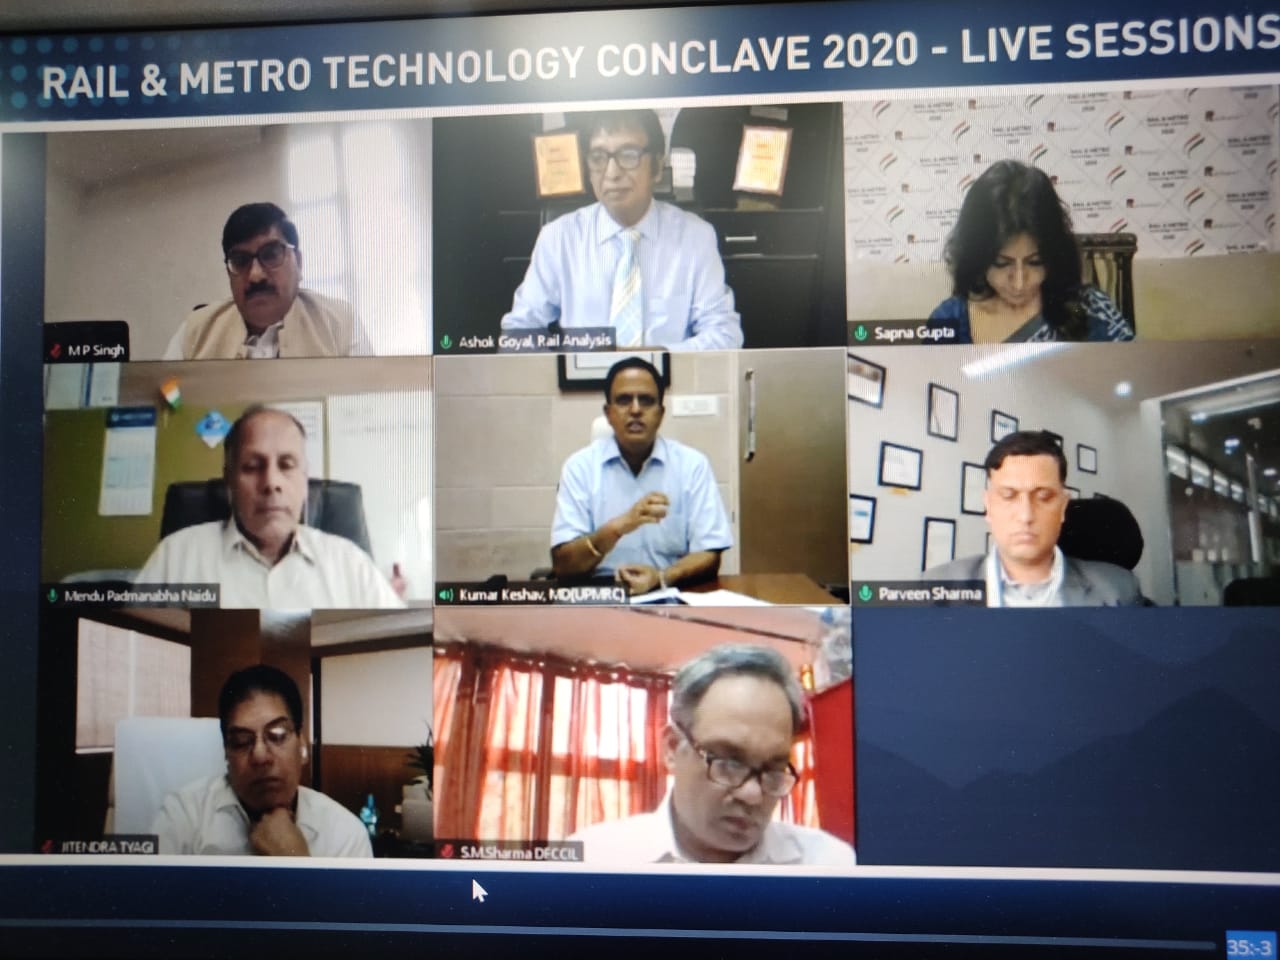 यूपी मेट्रो के एमडी कुमार केशव ने रेल एंड मेट्रो टेक्नॉलजी कॉन्क्लेव 2020 को किया संबोधित